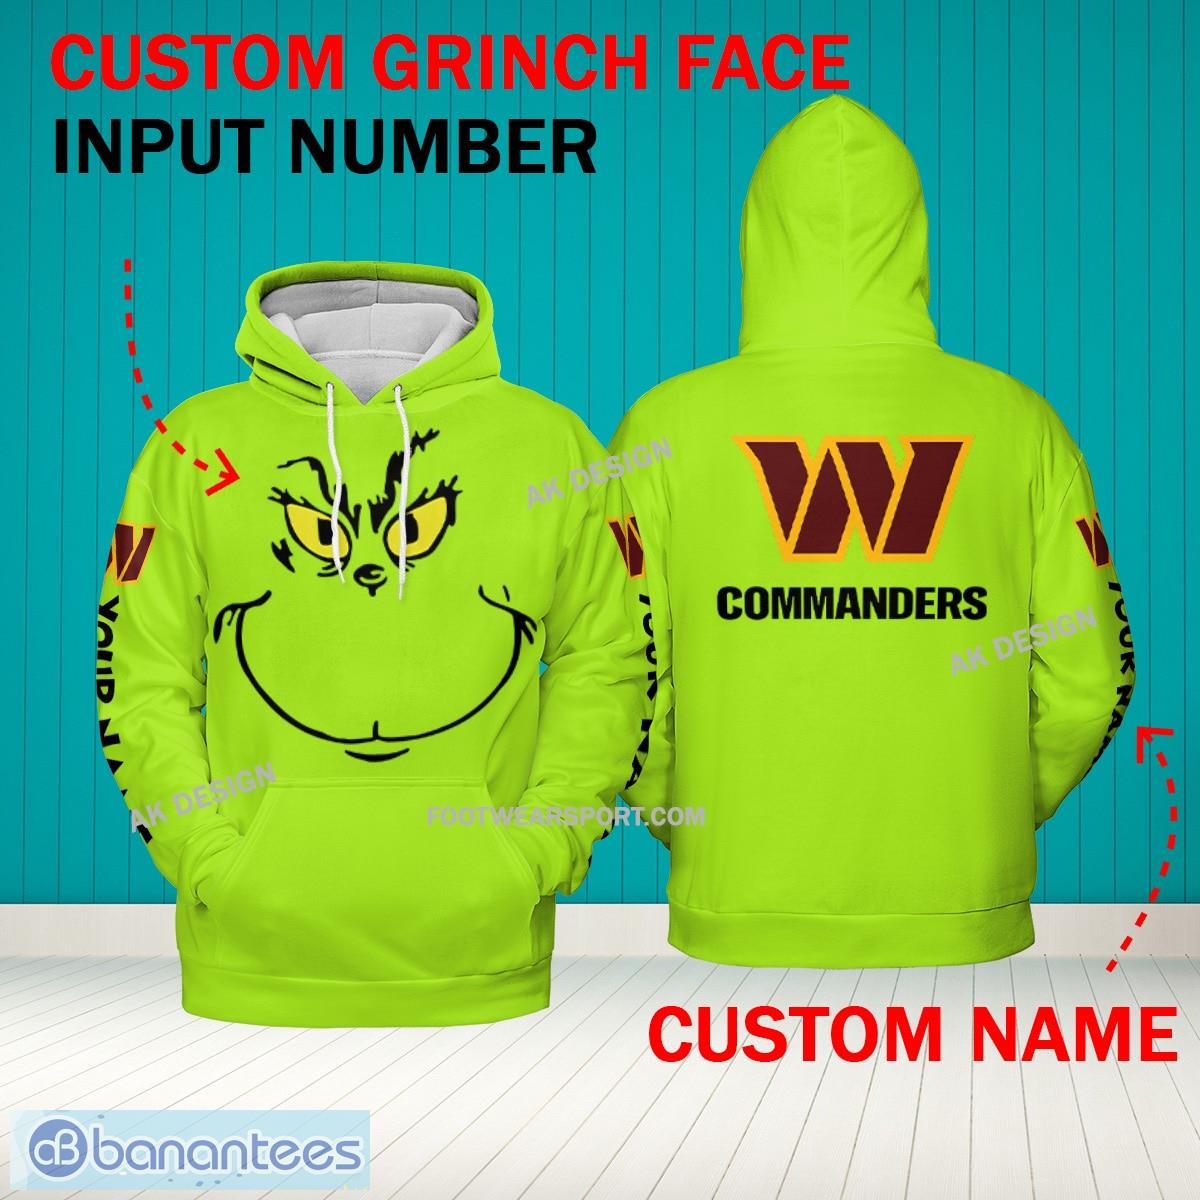 Grinch Face Washington Commanders 3D Hoodie, Zip Hoodie, Sweater Green AOP Custom Number And Name - Grinch Face NFL Washington Commanders 3D Hoodie